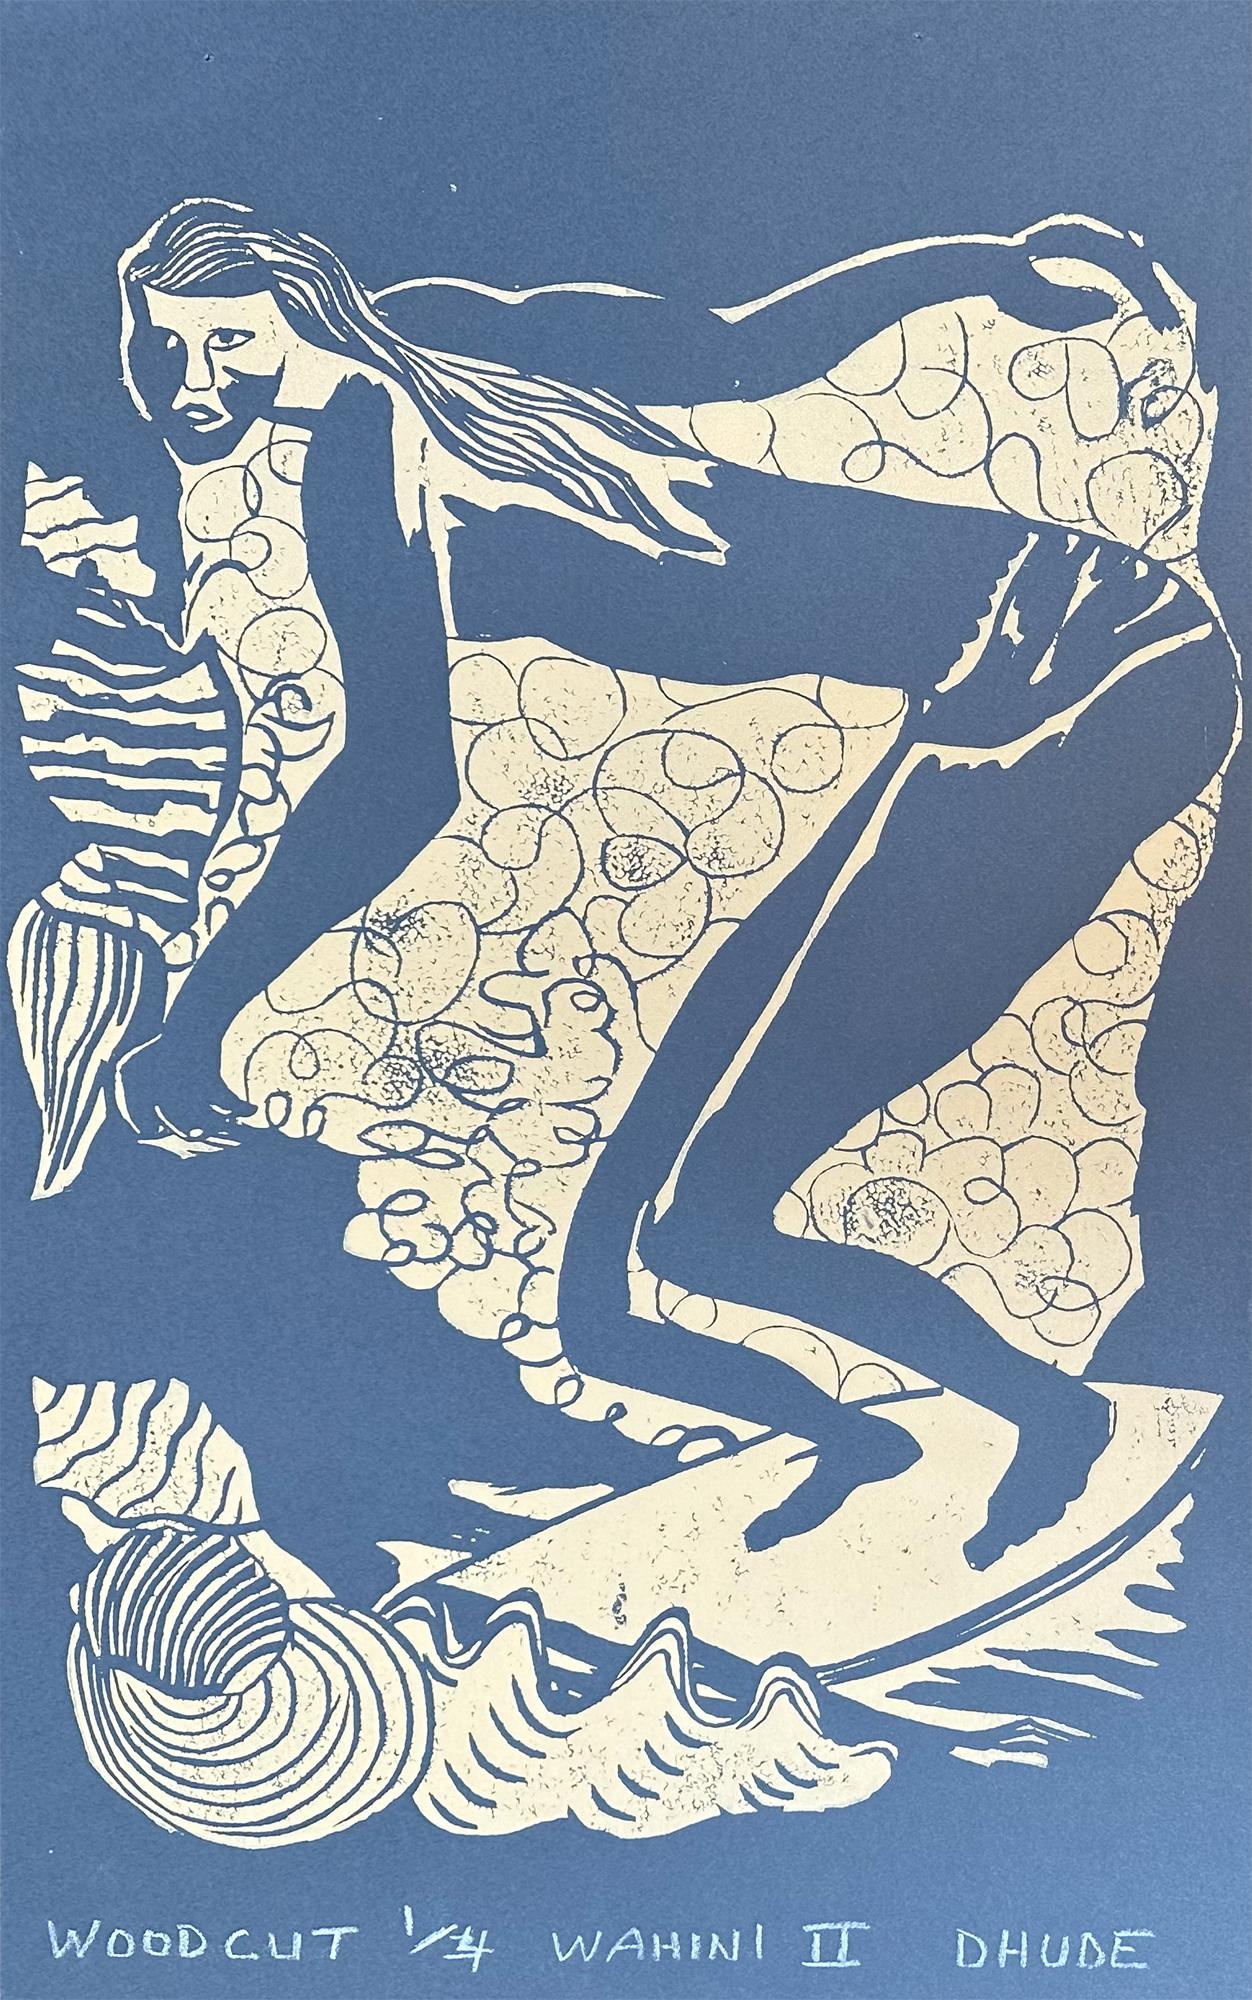 Wahini #2 - Surfing Art - Figurative - Woodcut Print By Marc Zimmerman

Édition limitée 01/04

Ce chef-d'œuvre est exposé à la Zimmerman Gallery (a) Gallery, Carmel CA.

Plongez dans l'univers captivant du surf et des vibrations de l'océan avec la